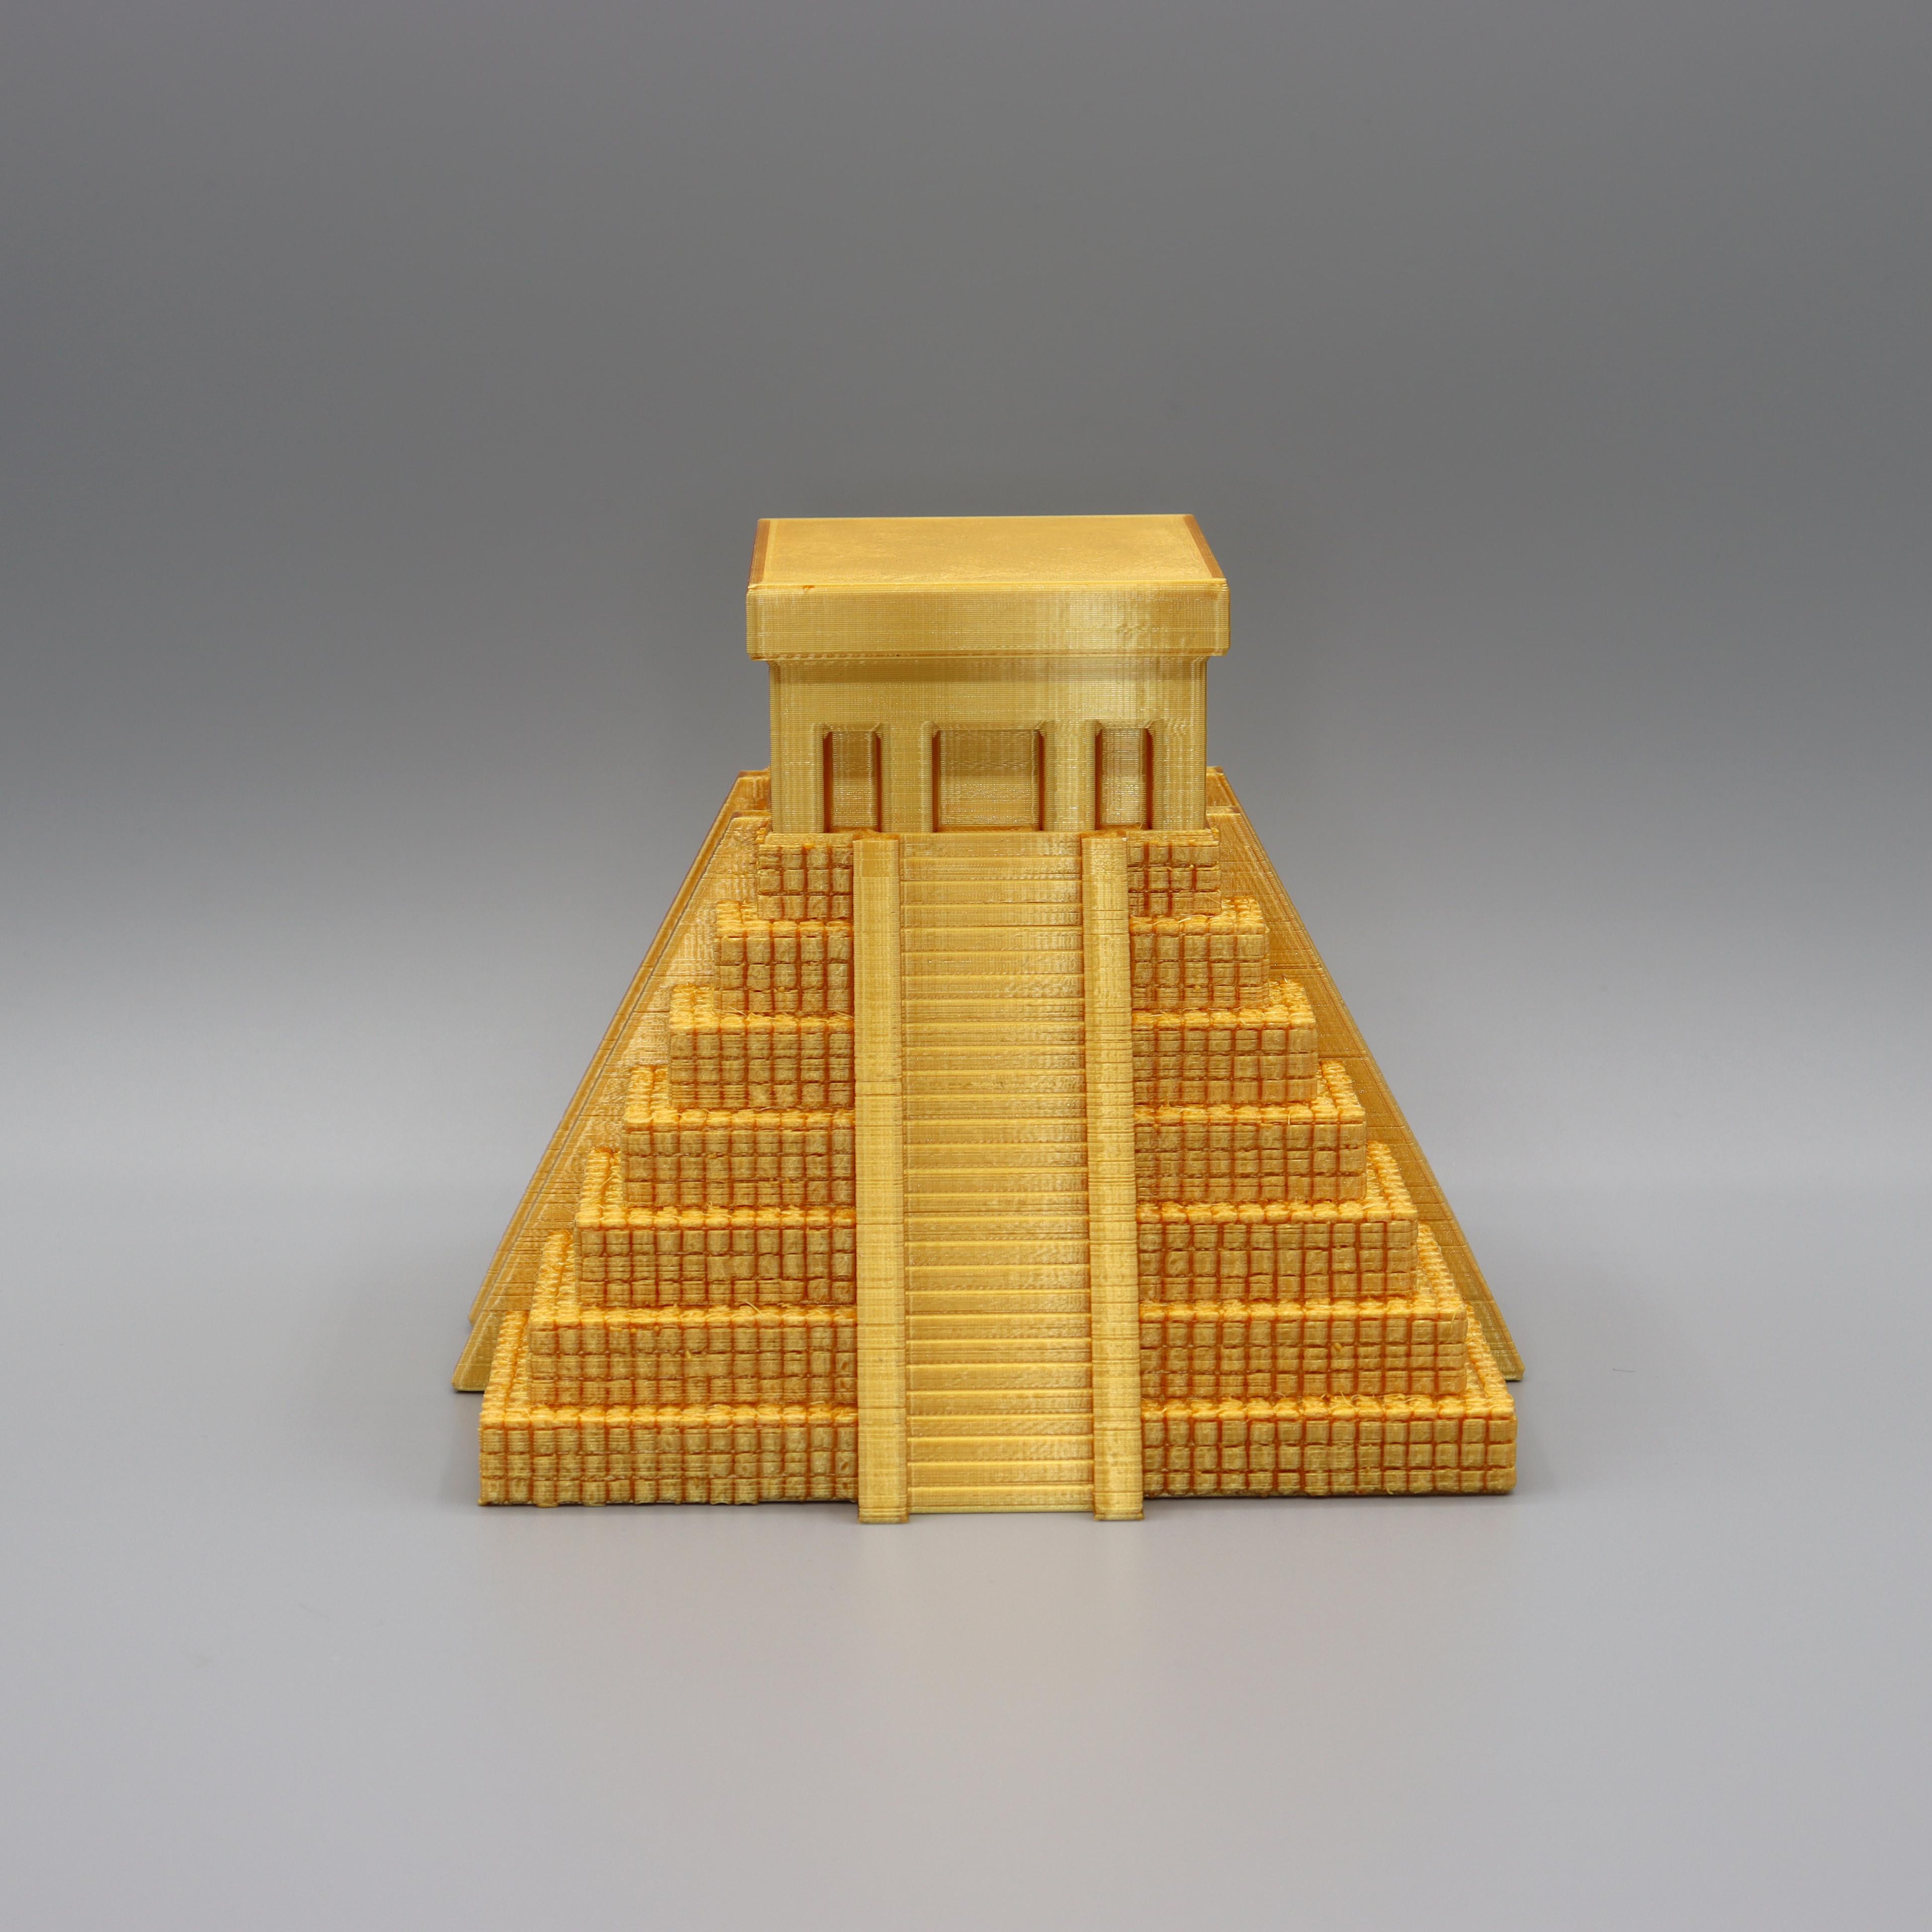 Aztec temple 3d model